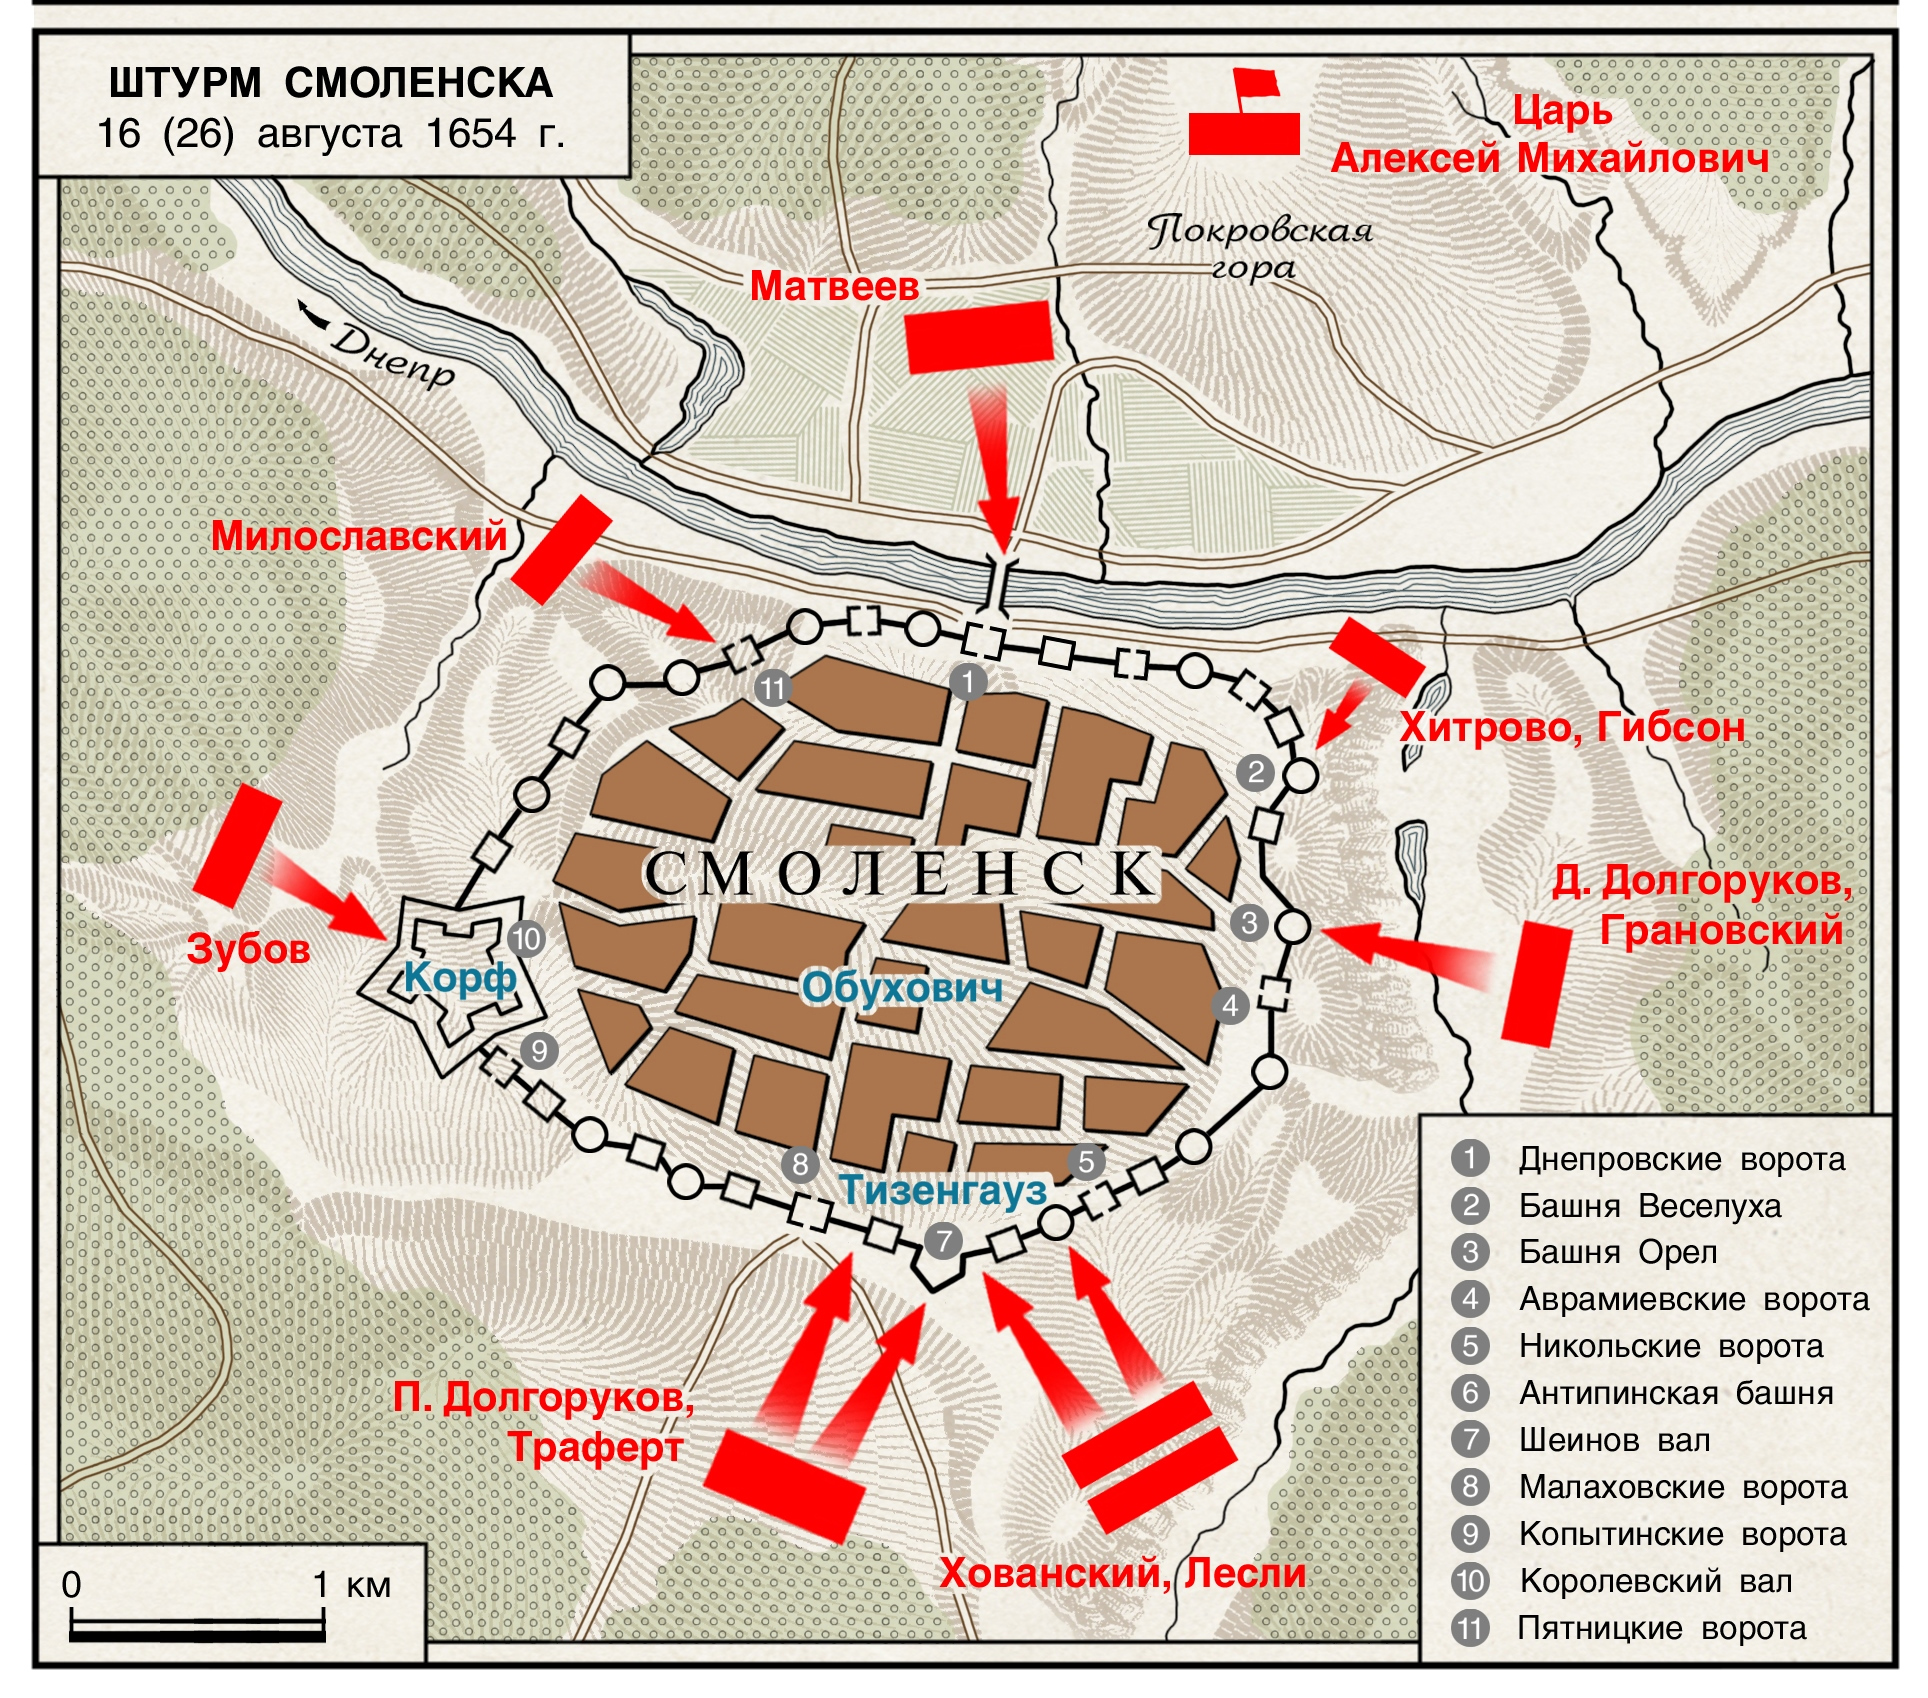 Схема штурма Смоленска 16 (26) августа 1654 года